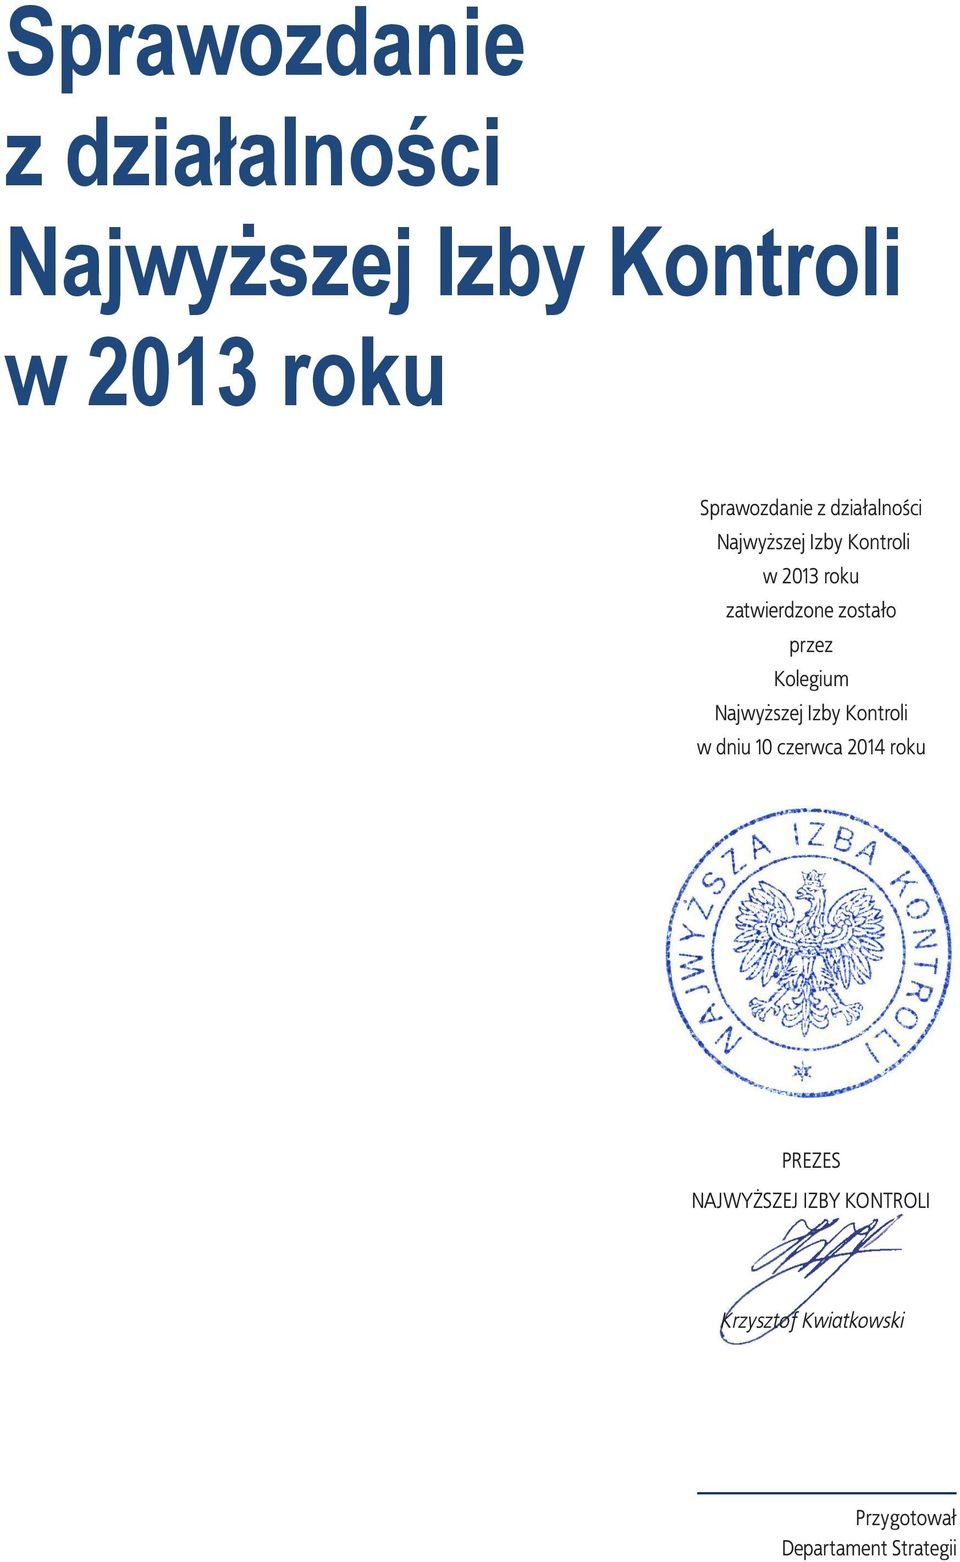 2014 roku Kolegium Najwyższej Izby Kontroli PREZES NAJWYŻSZEJ IZBY KONTROLI Krzysztof Kwiatkowski Warszawa, dnia czerwca